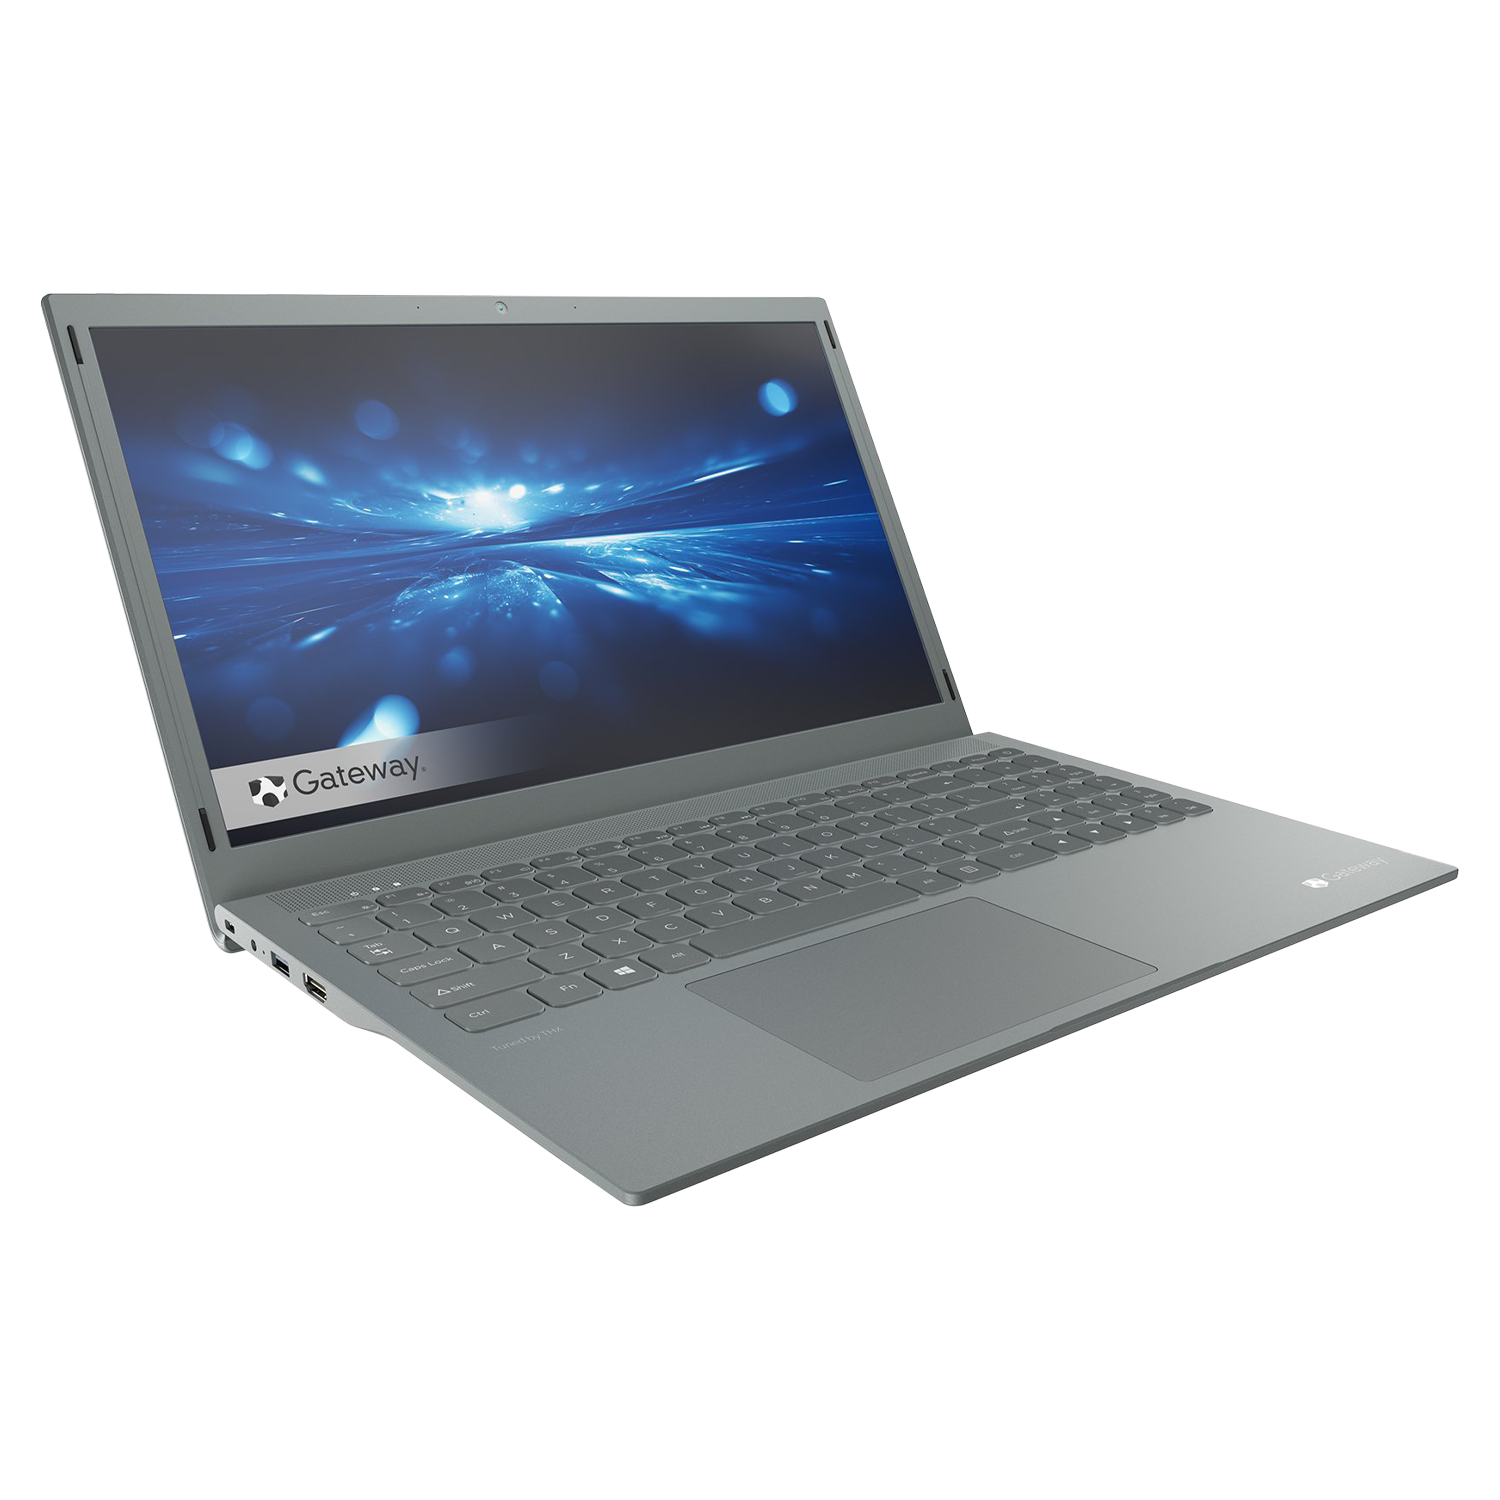 Notebook Gateway GWTN156-11BK Intel Pentium N5030 4GB / 128GB / Tela 15.6"/ Windows 10 - Preto